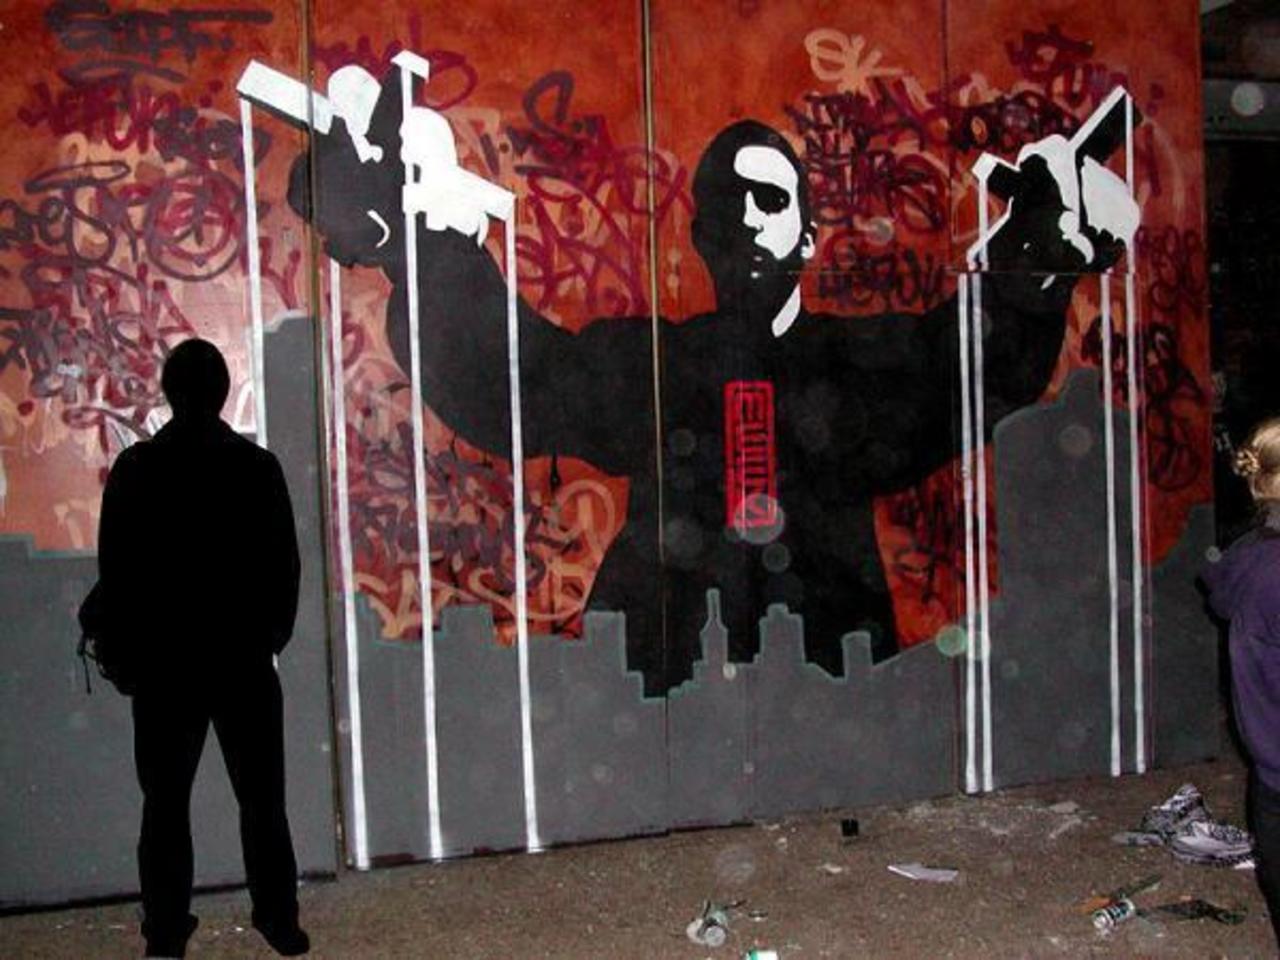 Street Artist Meek | Excellence in Stencil Graffiti

#streetart #art #urbanart #graffiti http://t.co/Man0U6PJa5